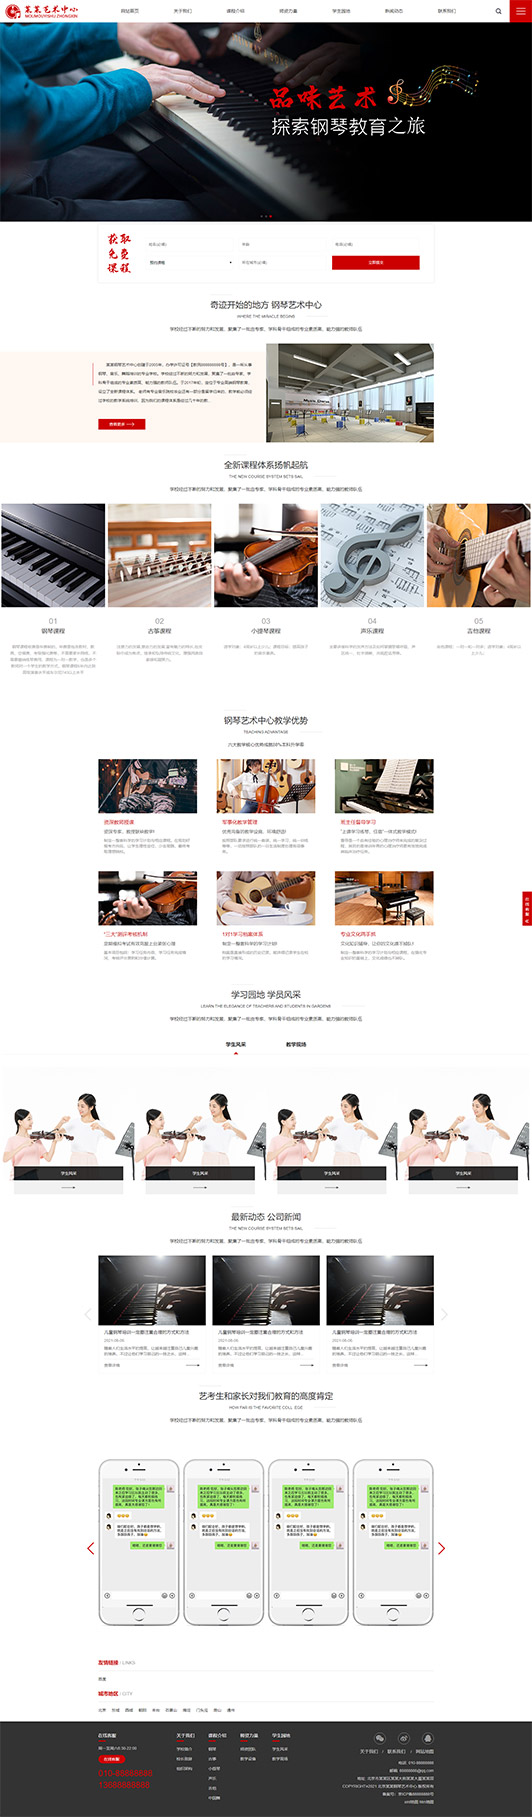 包头钢琴艺术培训公司响应式企业网站